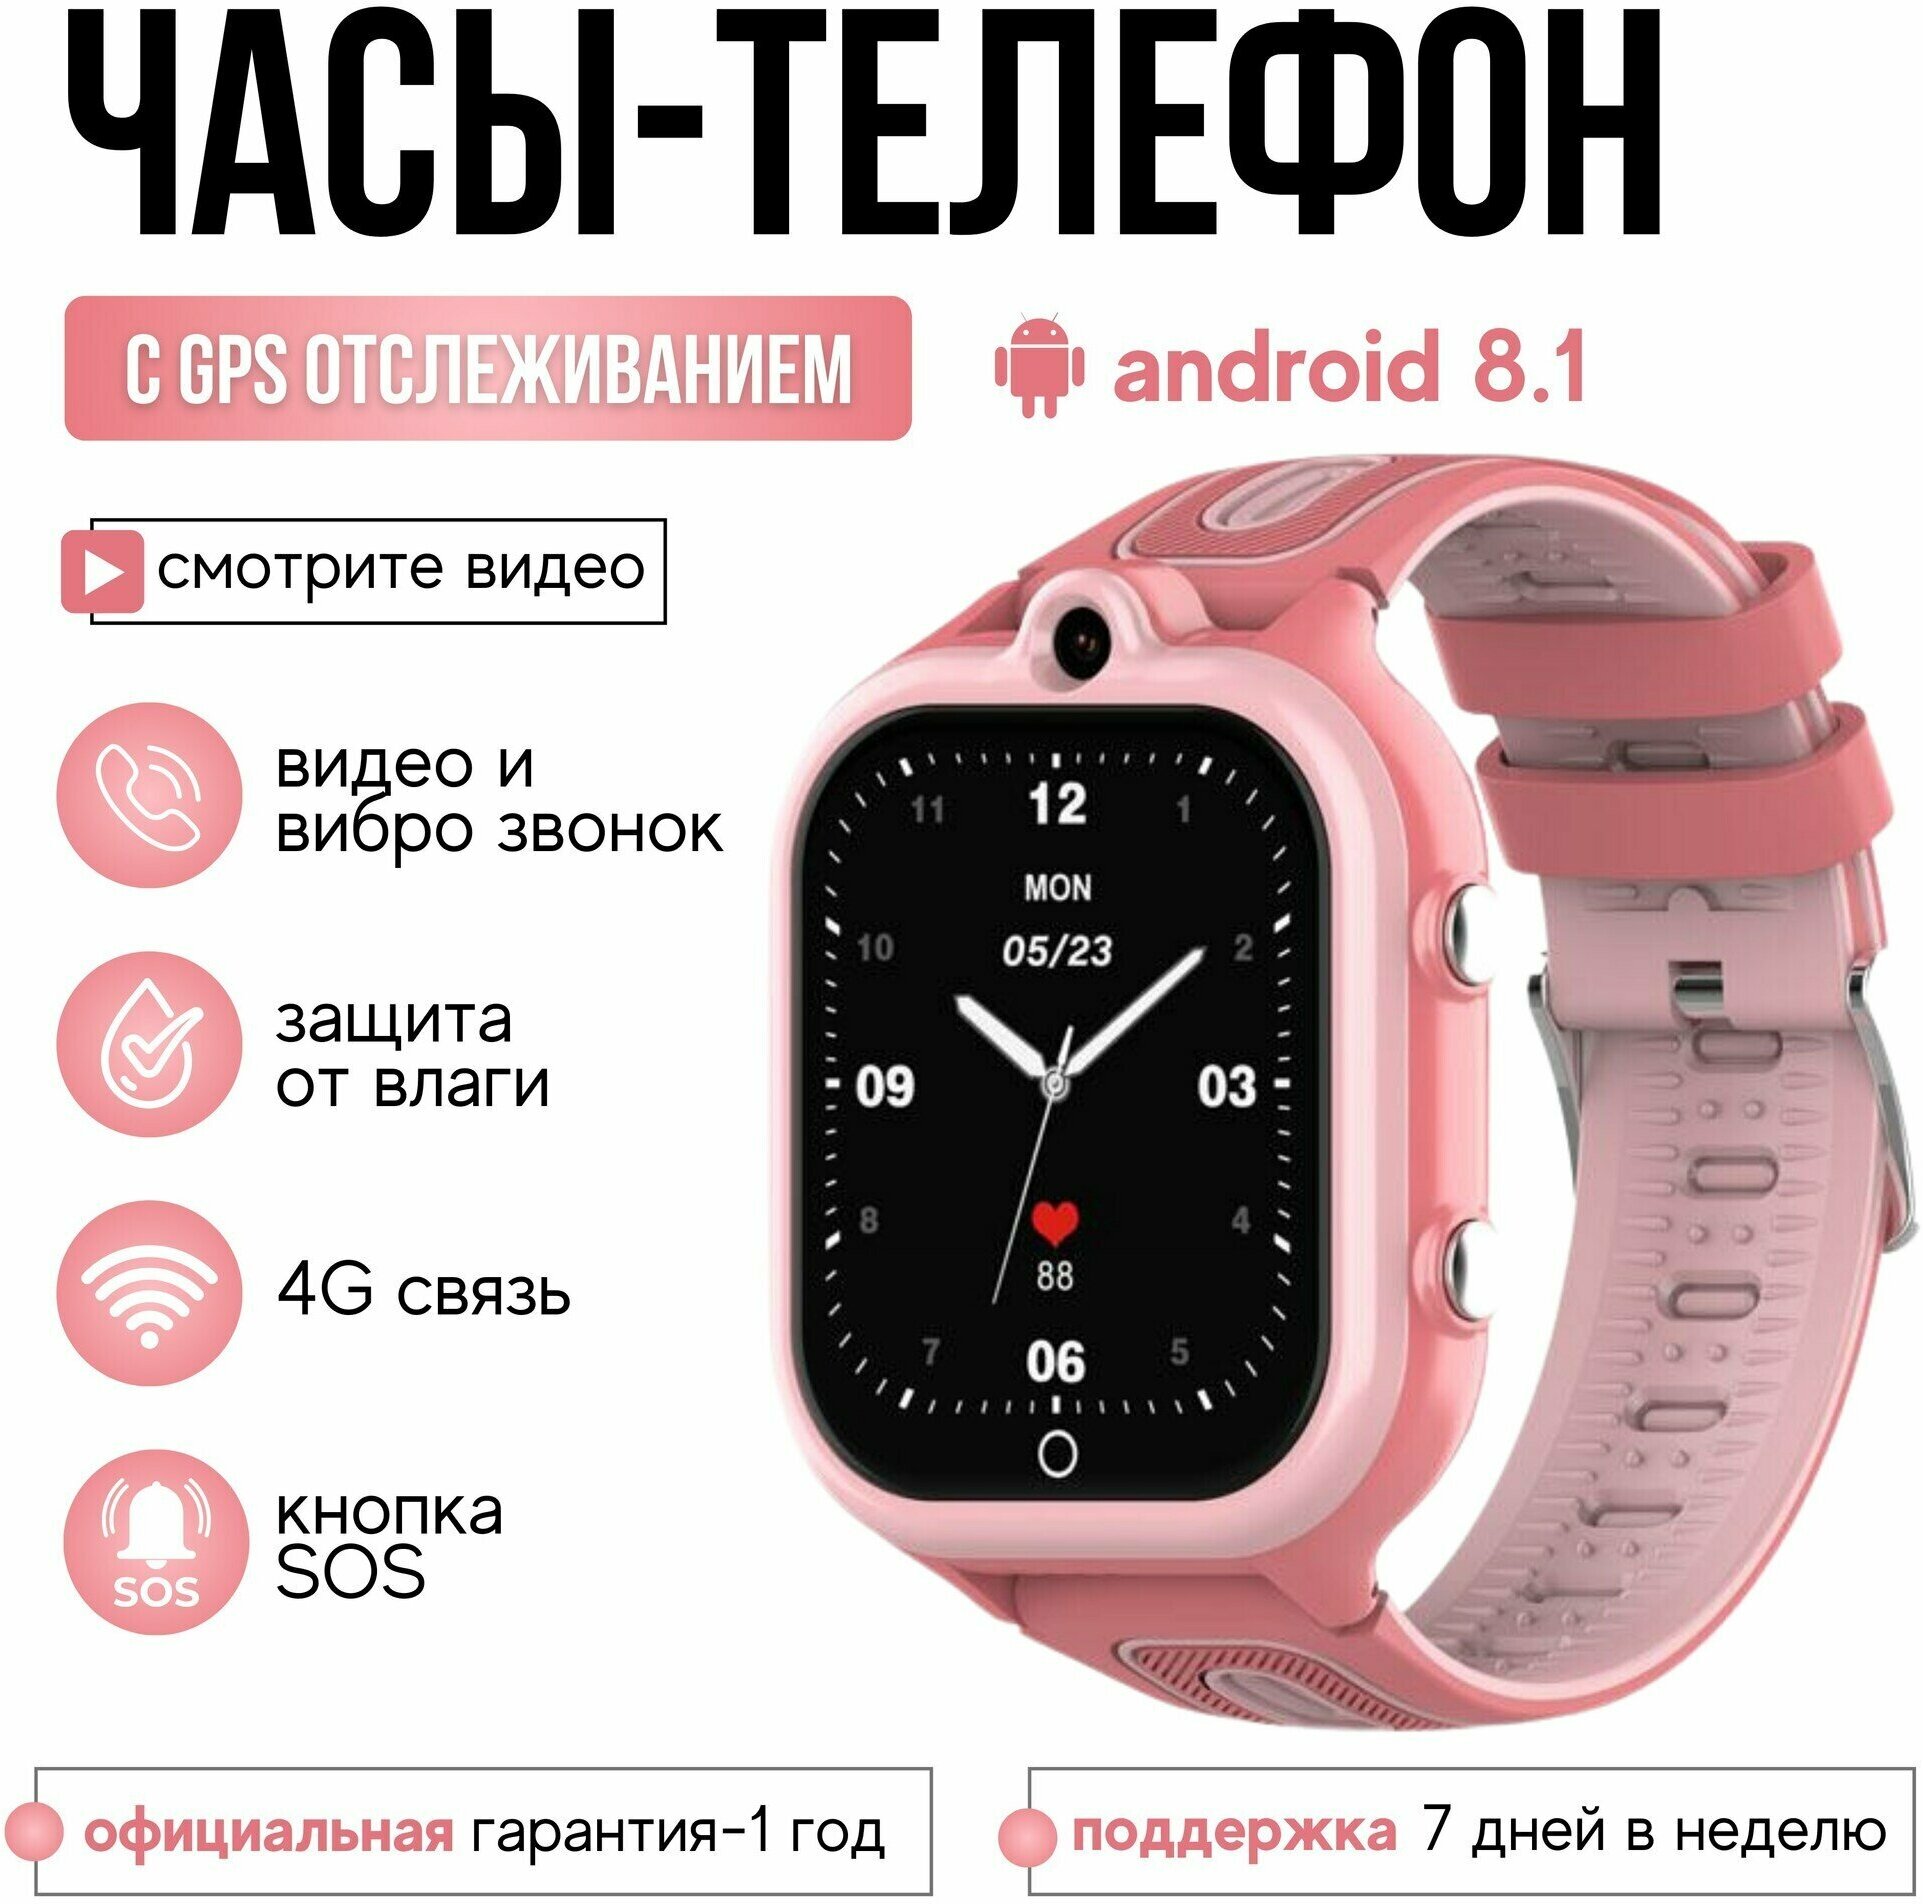 Wonlex GPS часы-телефон KT29 4G c видеозвонком и кнопкой SOS (Розовый)